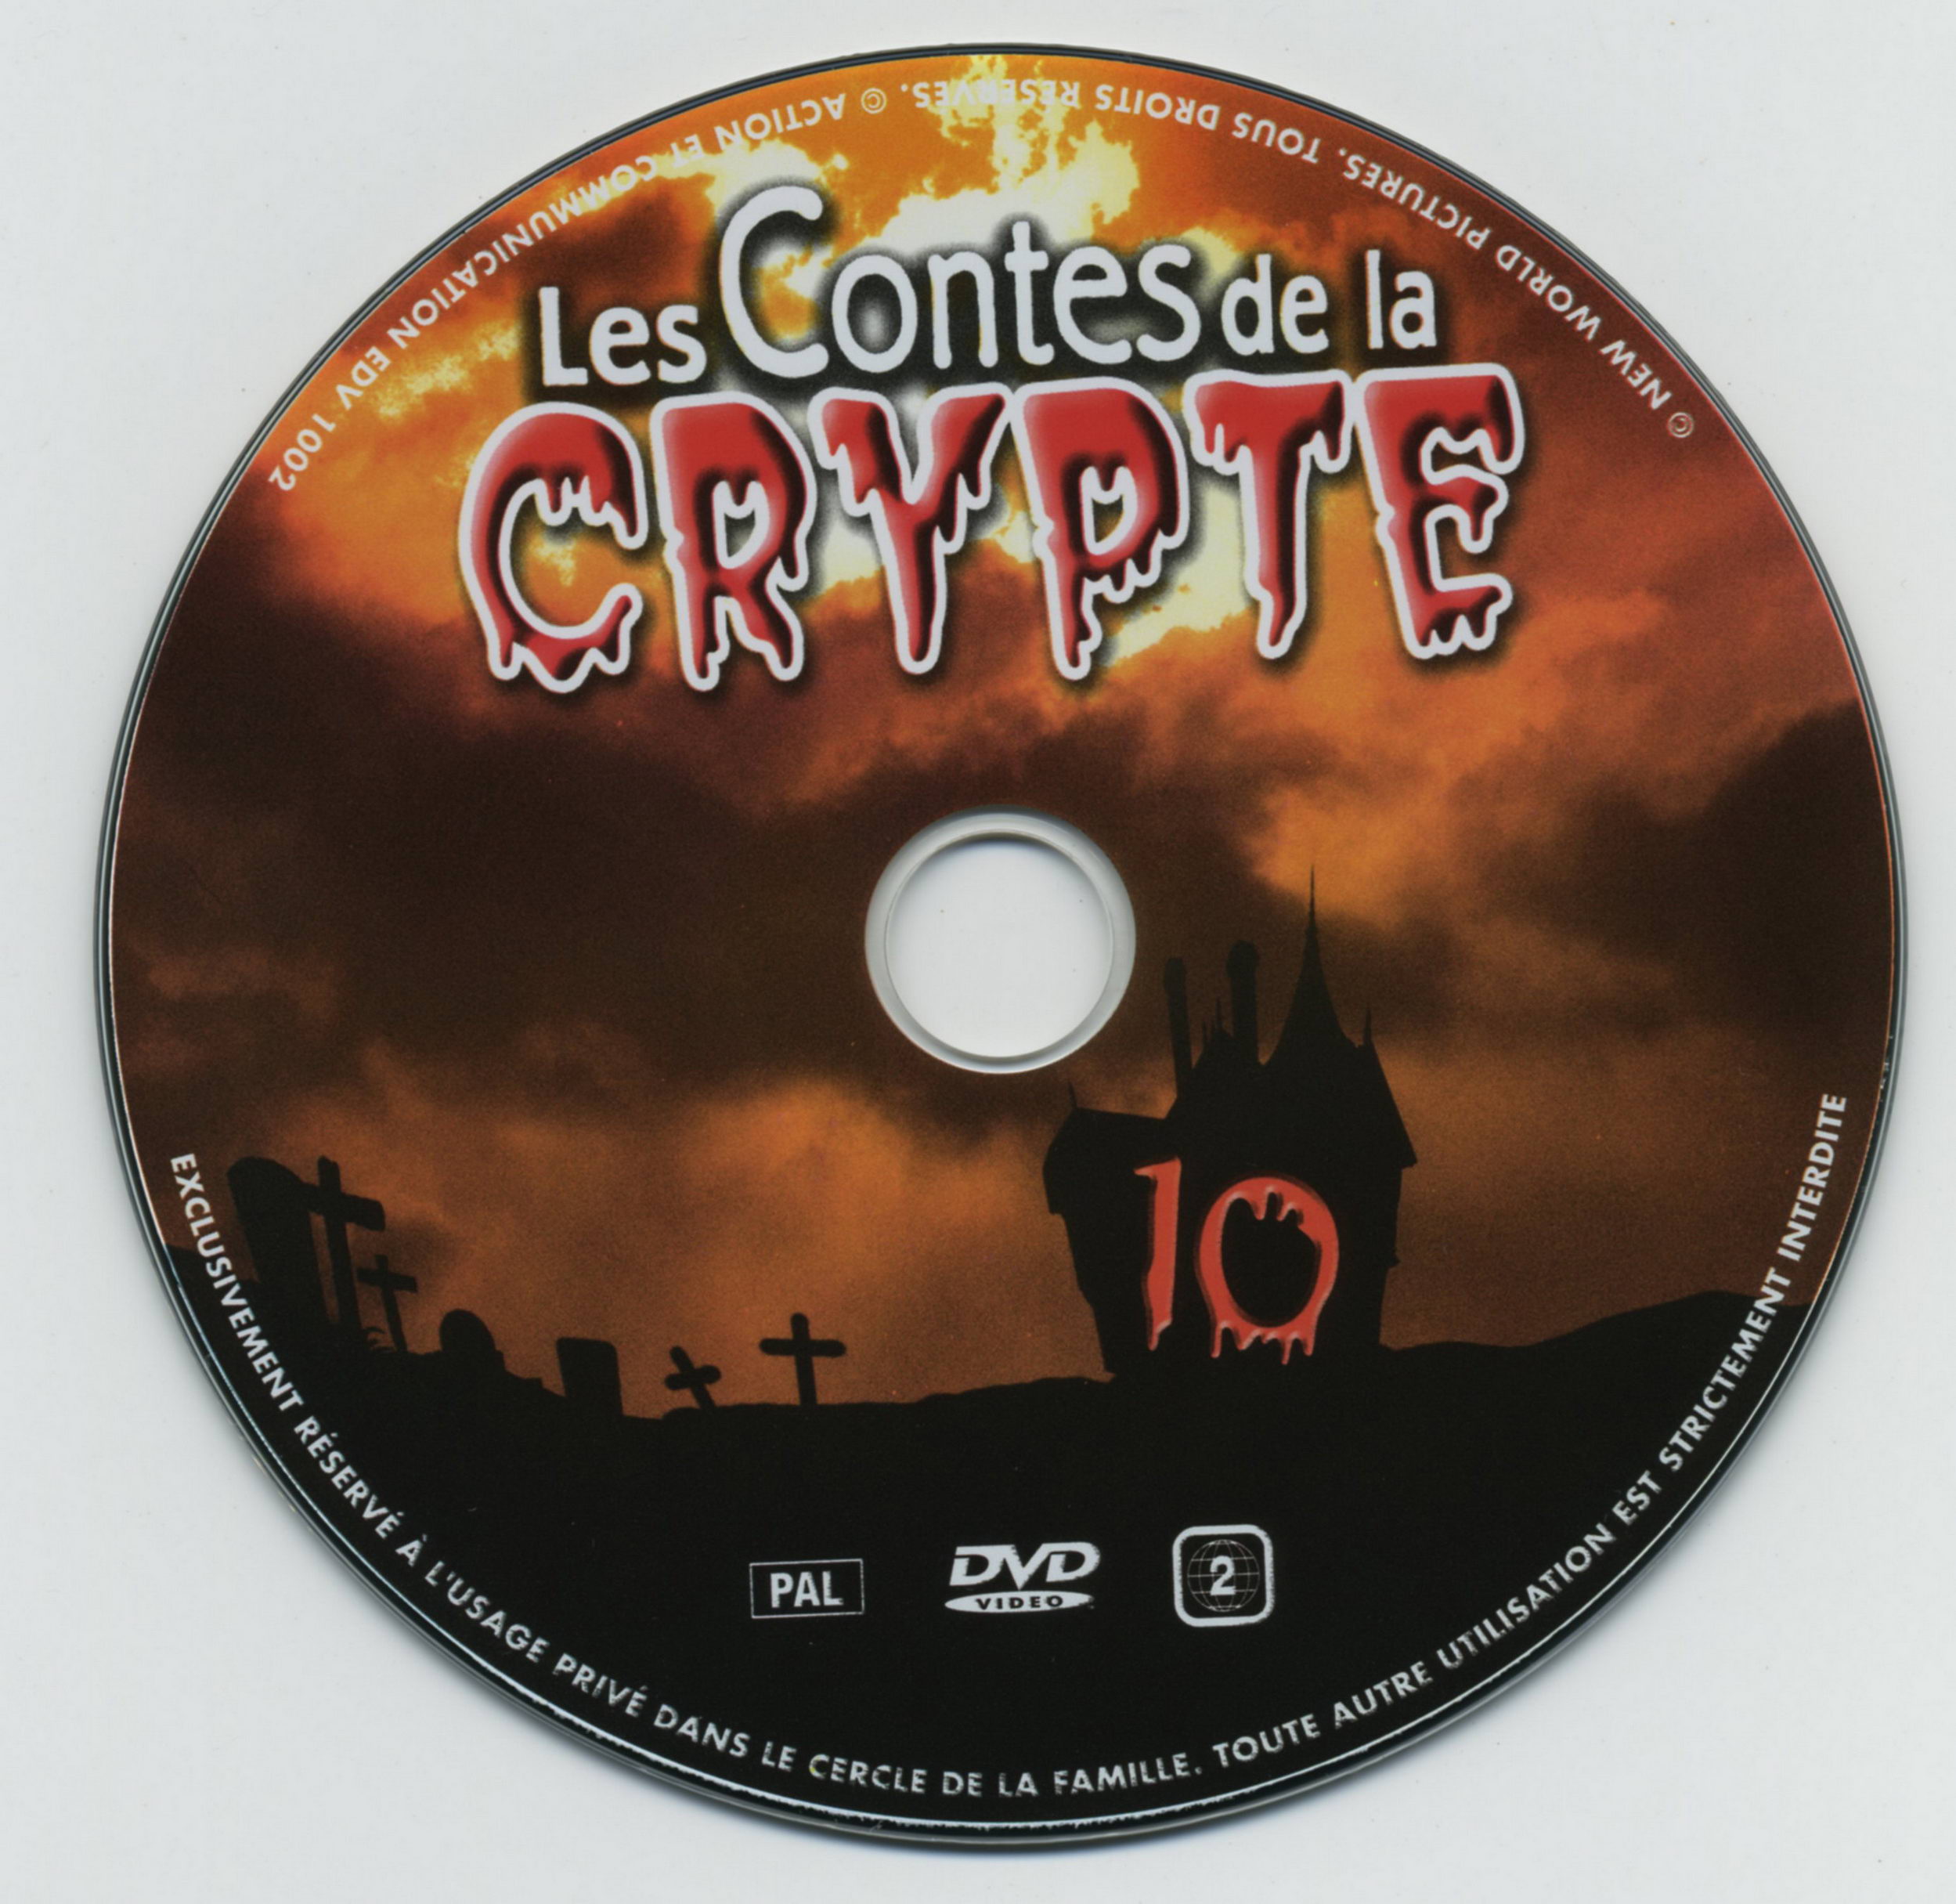 Les contes de la crypte vol 10 v2